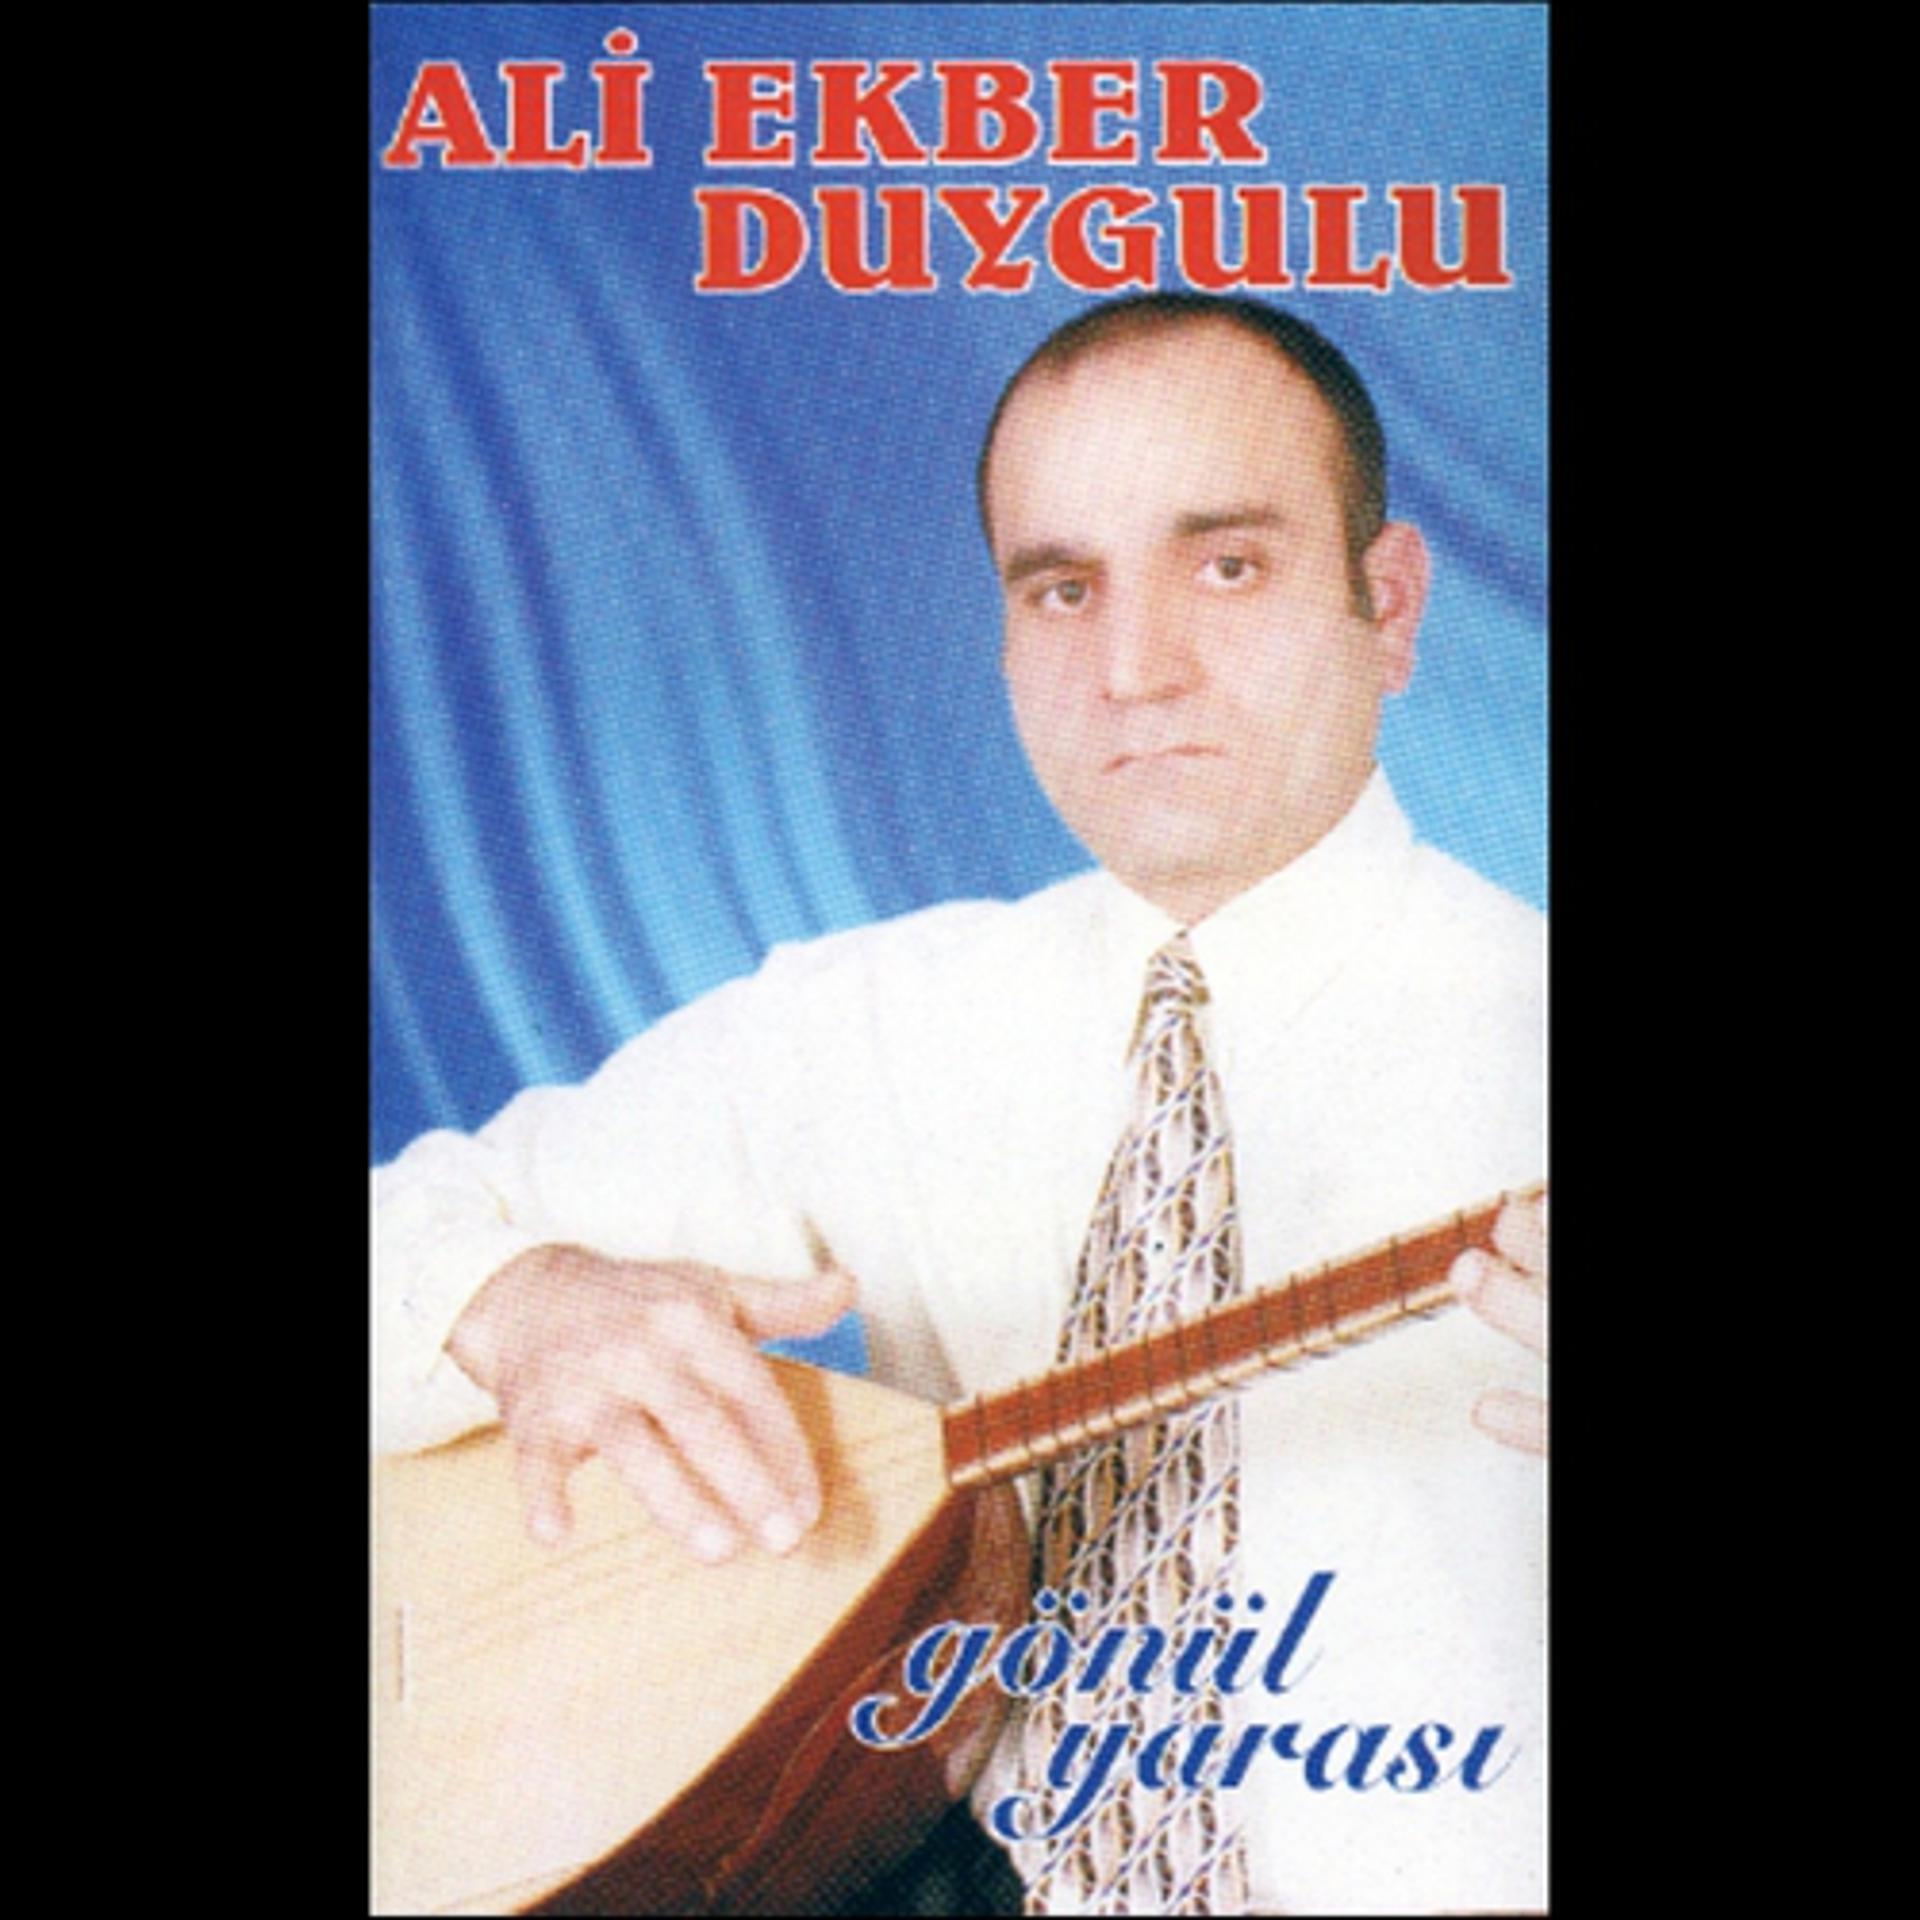 Постер альбома Gönül Yarası